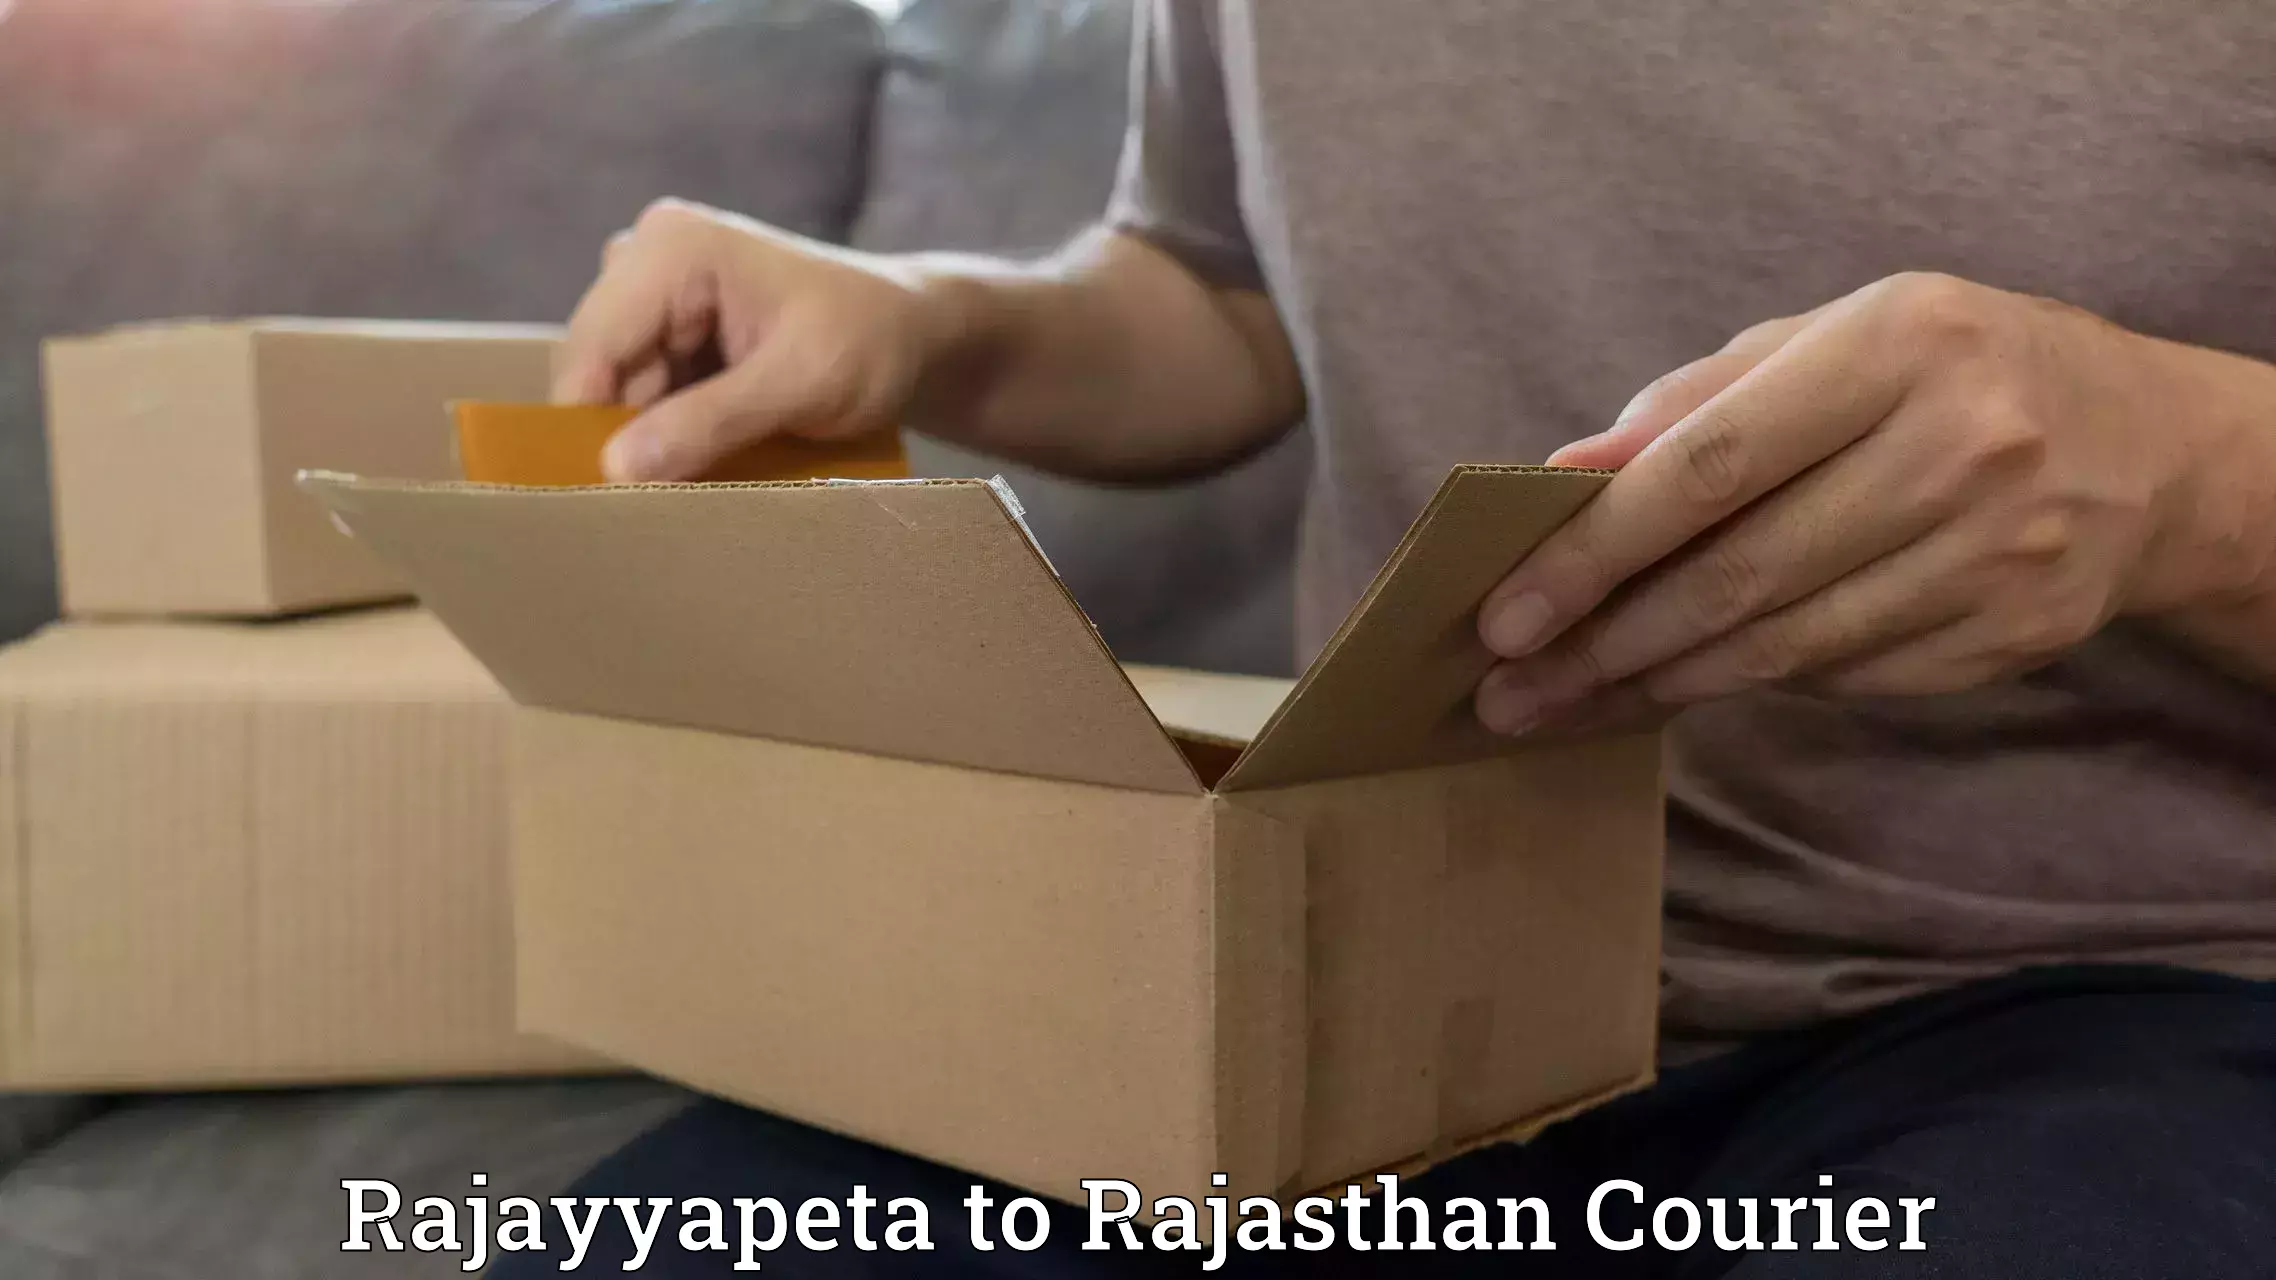 Efficient logistics management Rajayyapeta to Yathalakunta